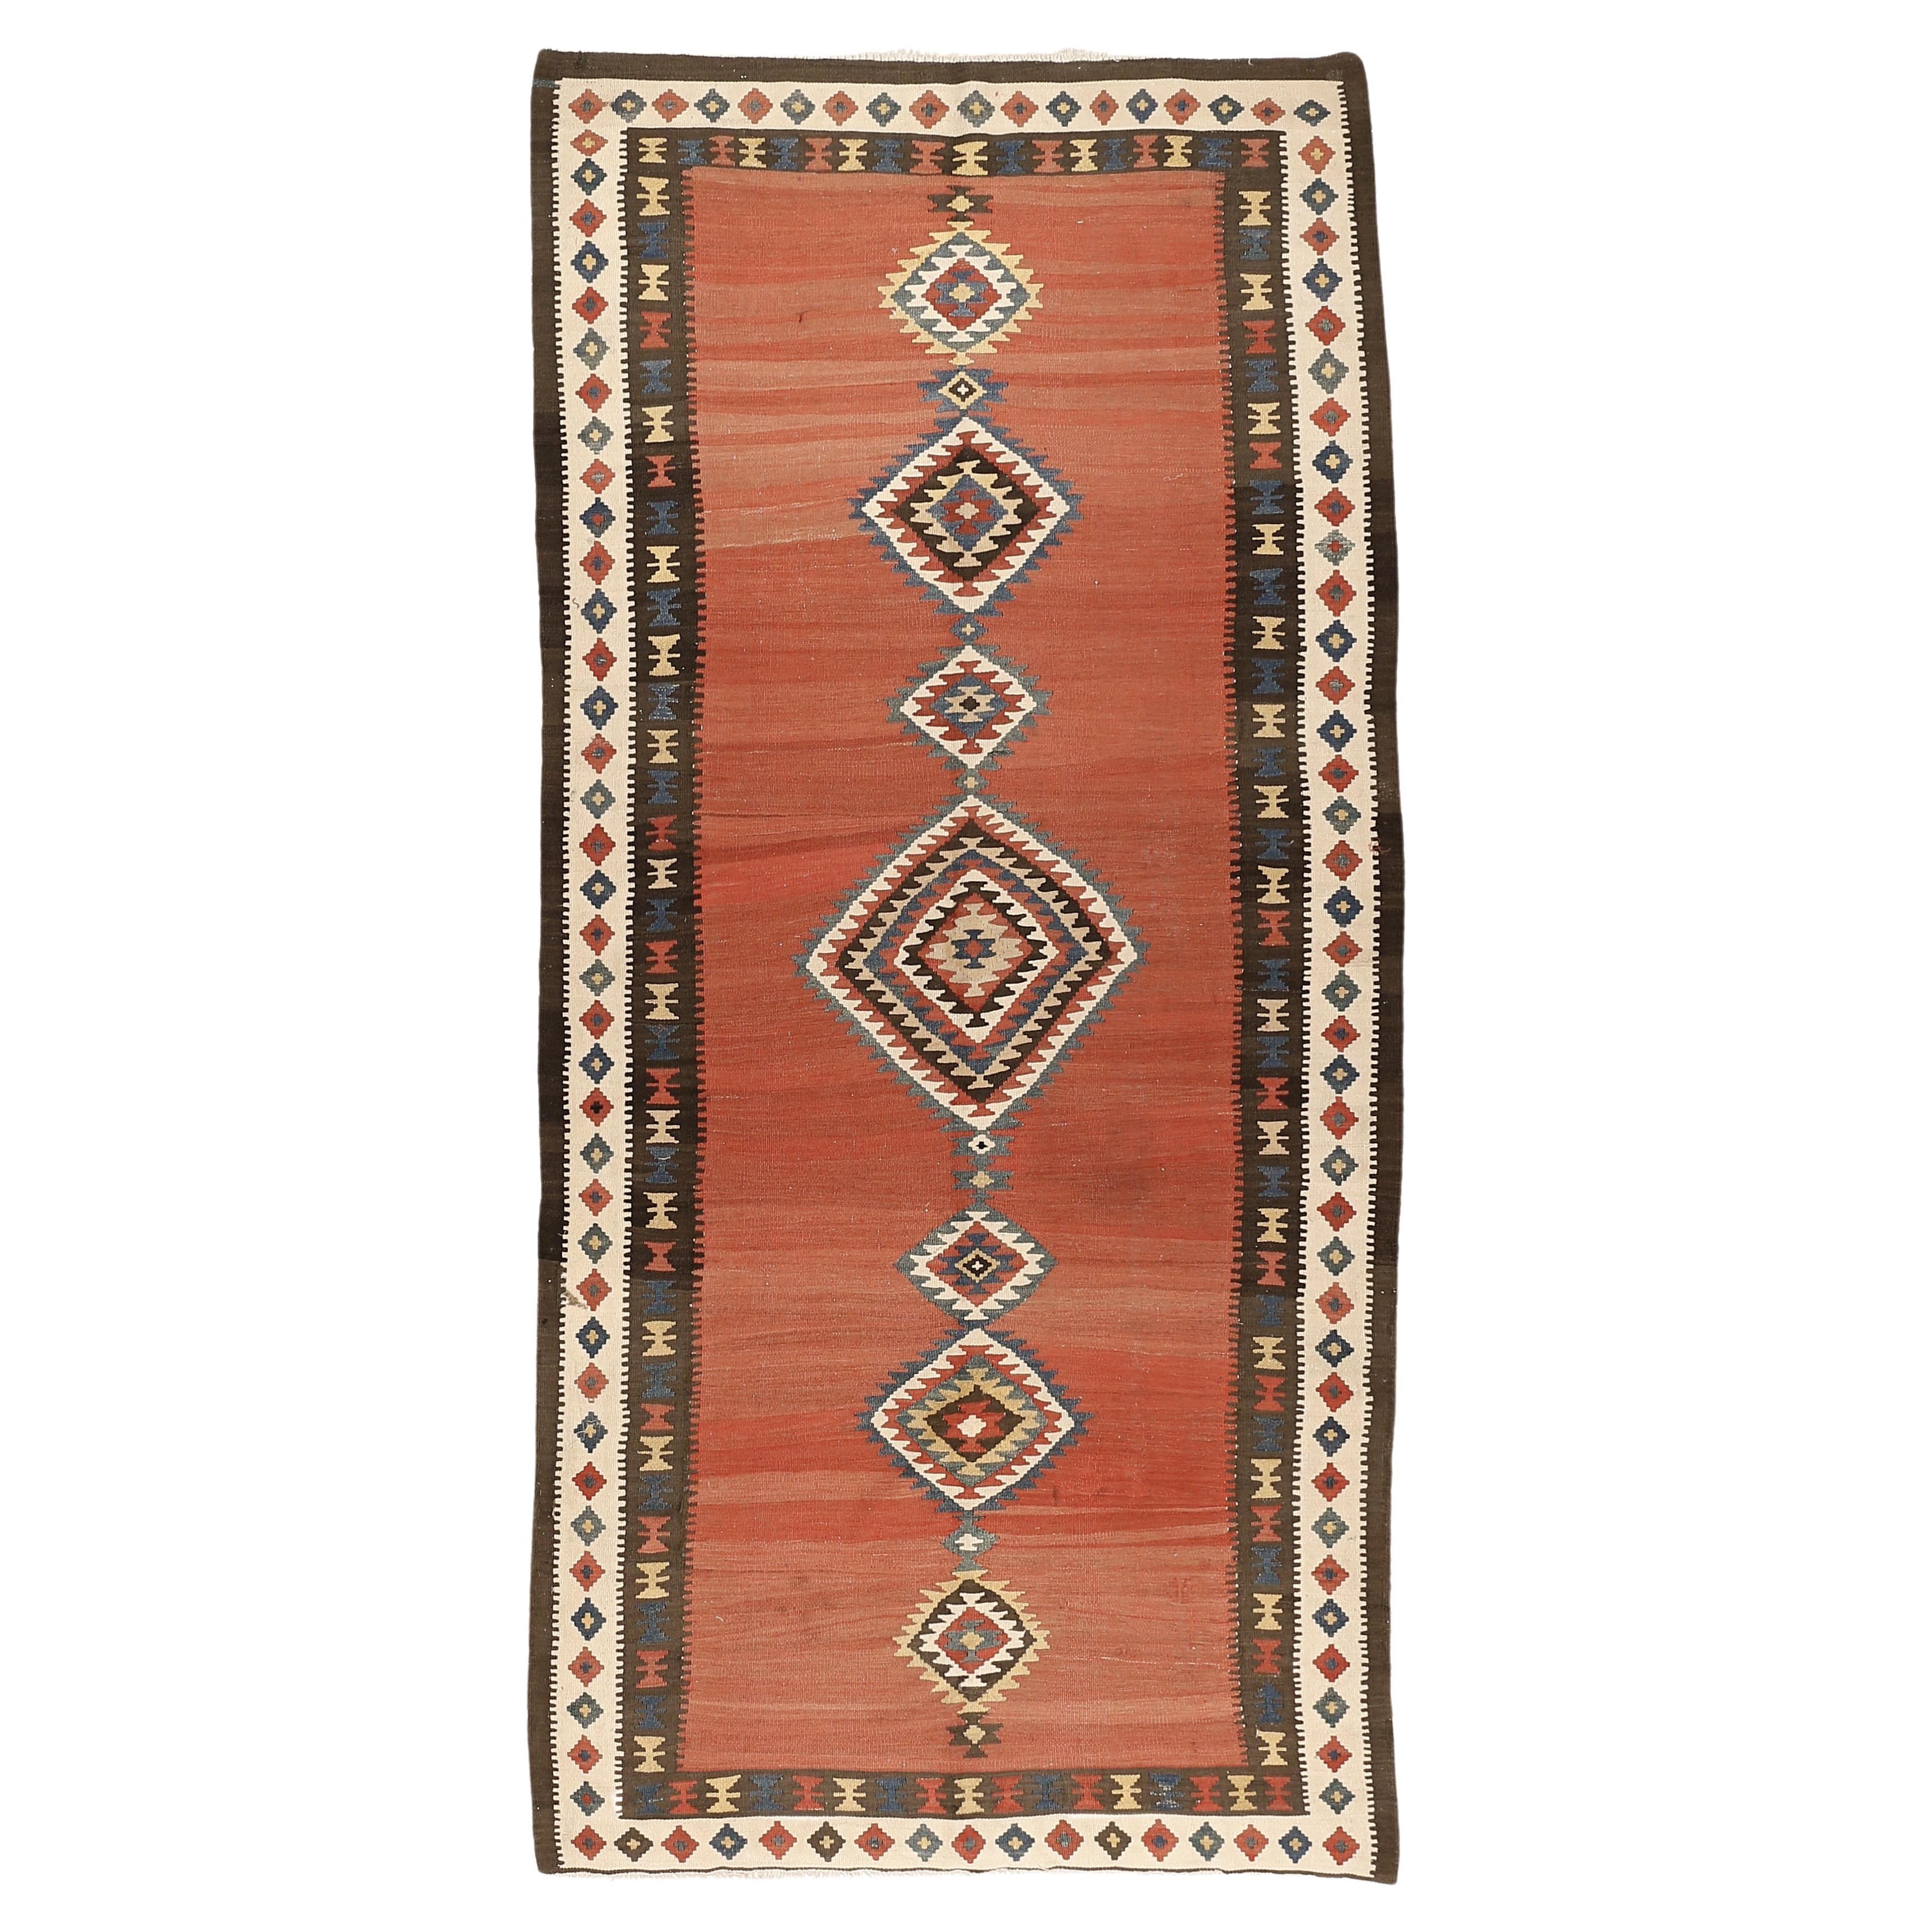 Antiker kaukasischer geometrischer minimalistischer Kelimteppich